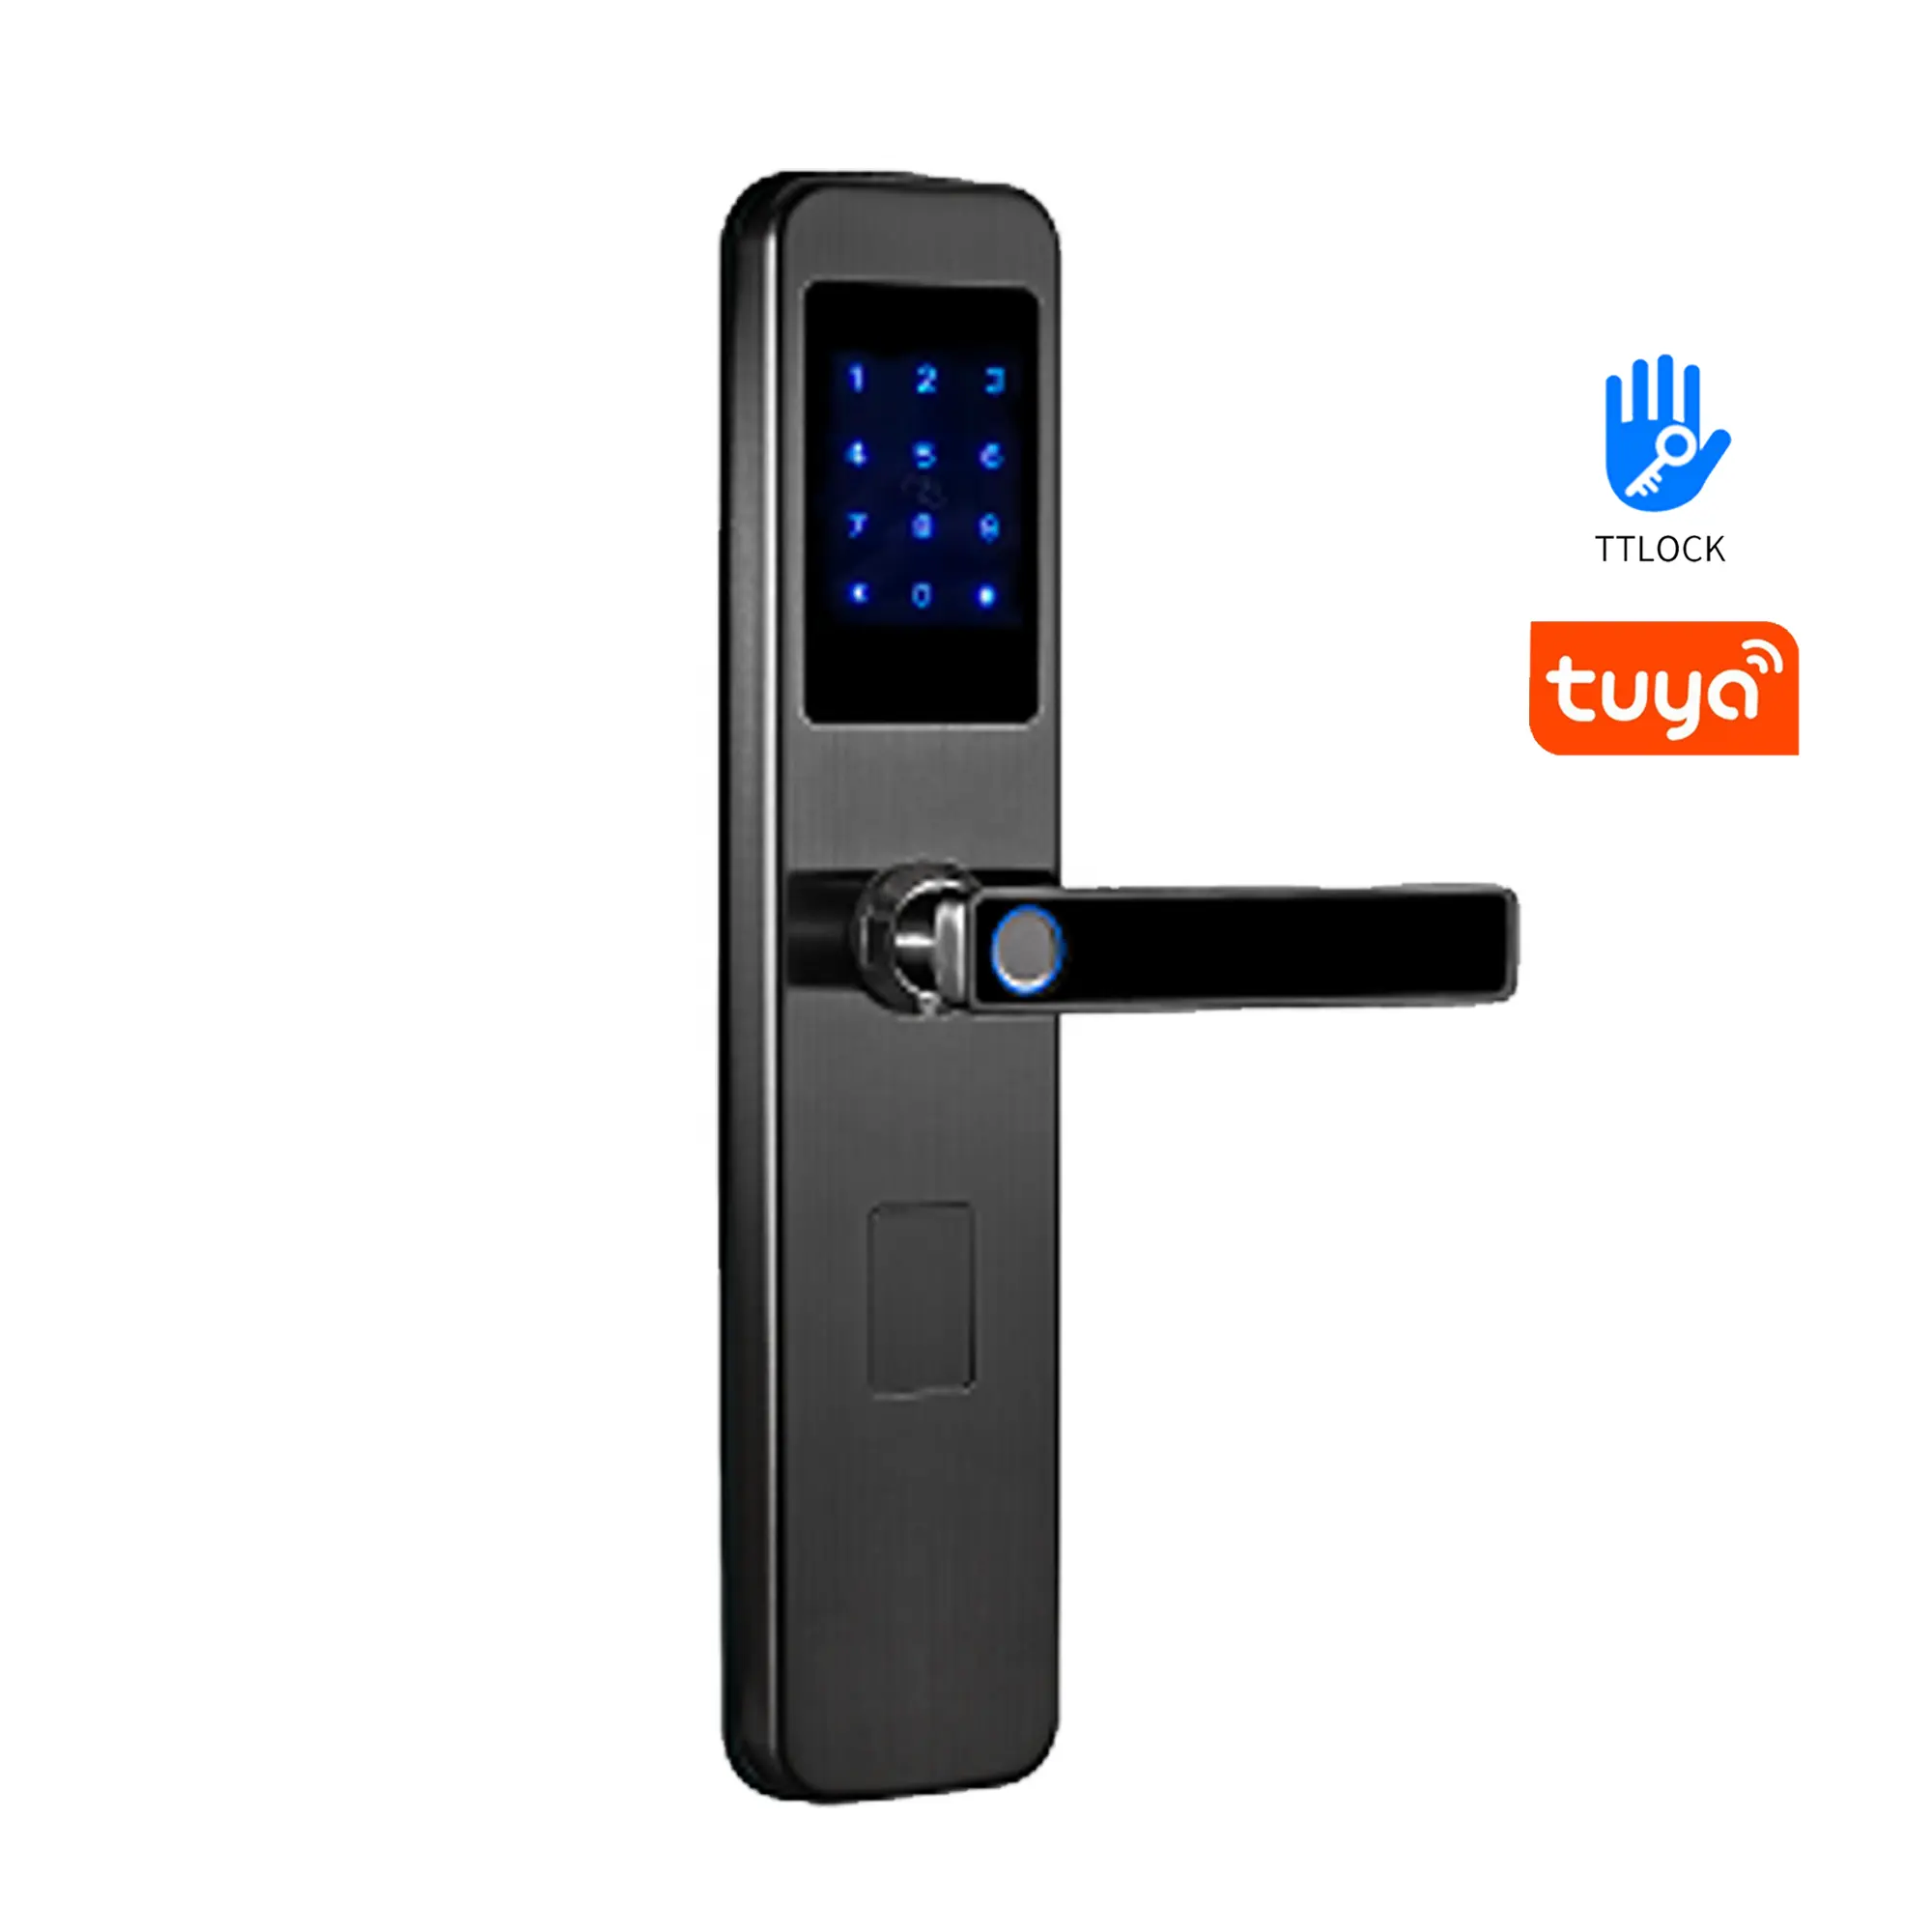 Cerradura inteligente de acero inoxidable 304 tuya wifi o ttlock con aplicación de huellas dactilares, cerradura de puerta biométrica Digital Bluetooth con huella dactilar